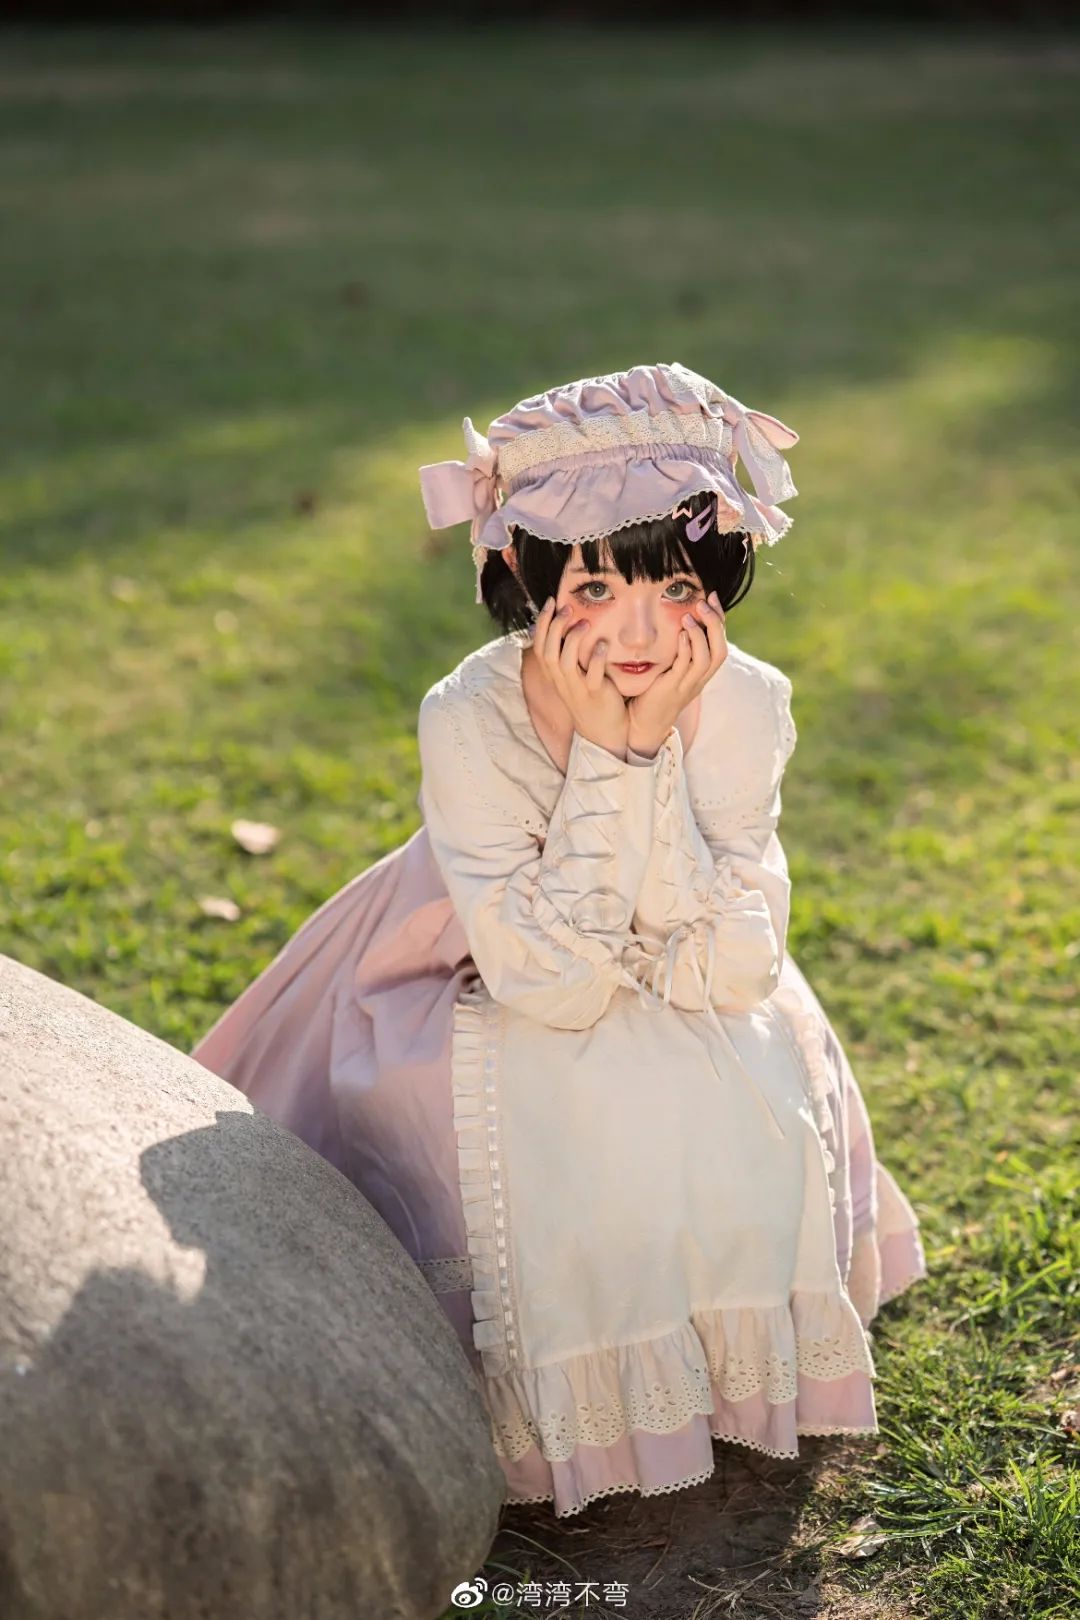 妹子摄影 – Lolita少女真的好小只，像洋娃娃（@湾湾不弯）_图片 No.9